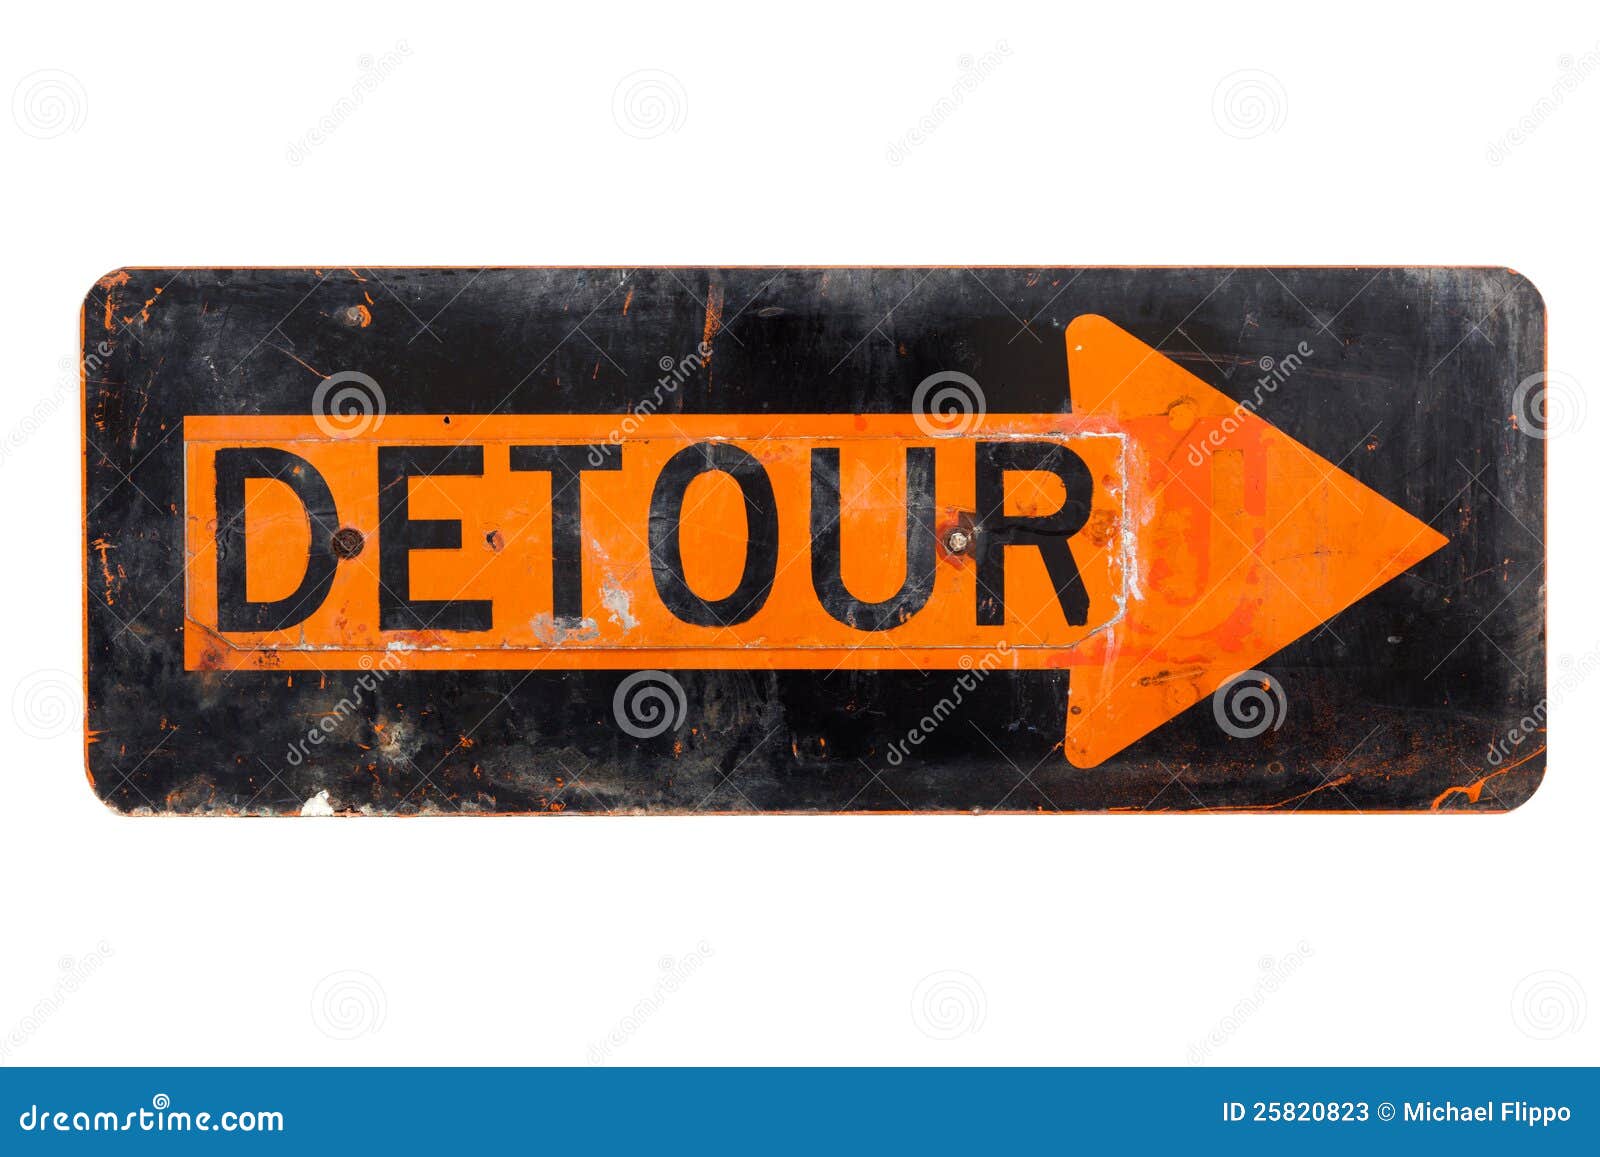 detour sign - old orange and black road sign